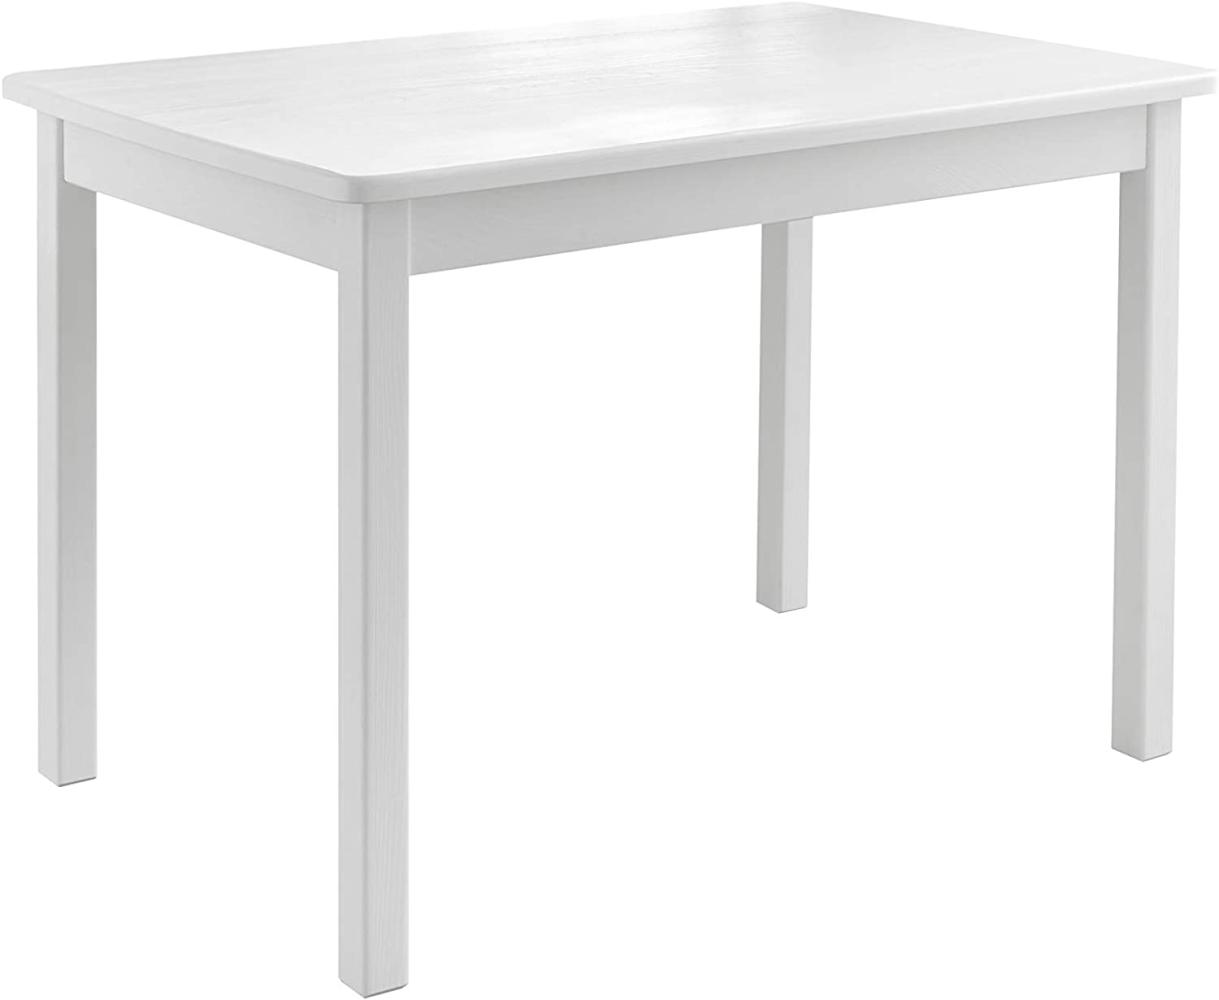 Kindertisch >Felix< in Weiß aus Massivholz - 76x51x50cm (BxHxT) Bild 1